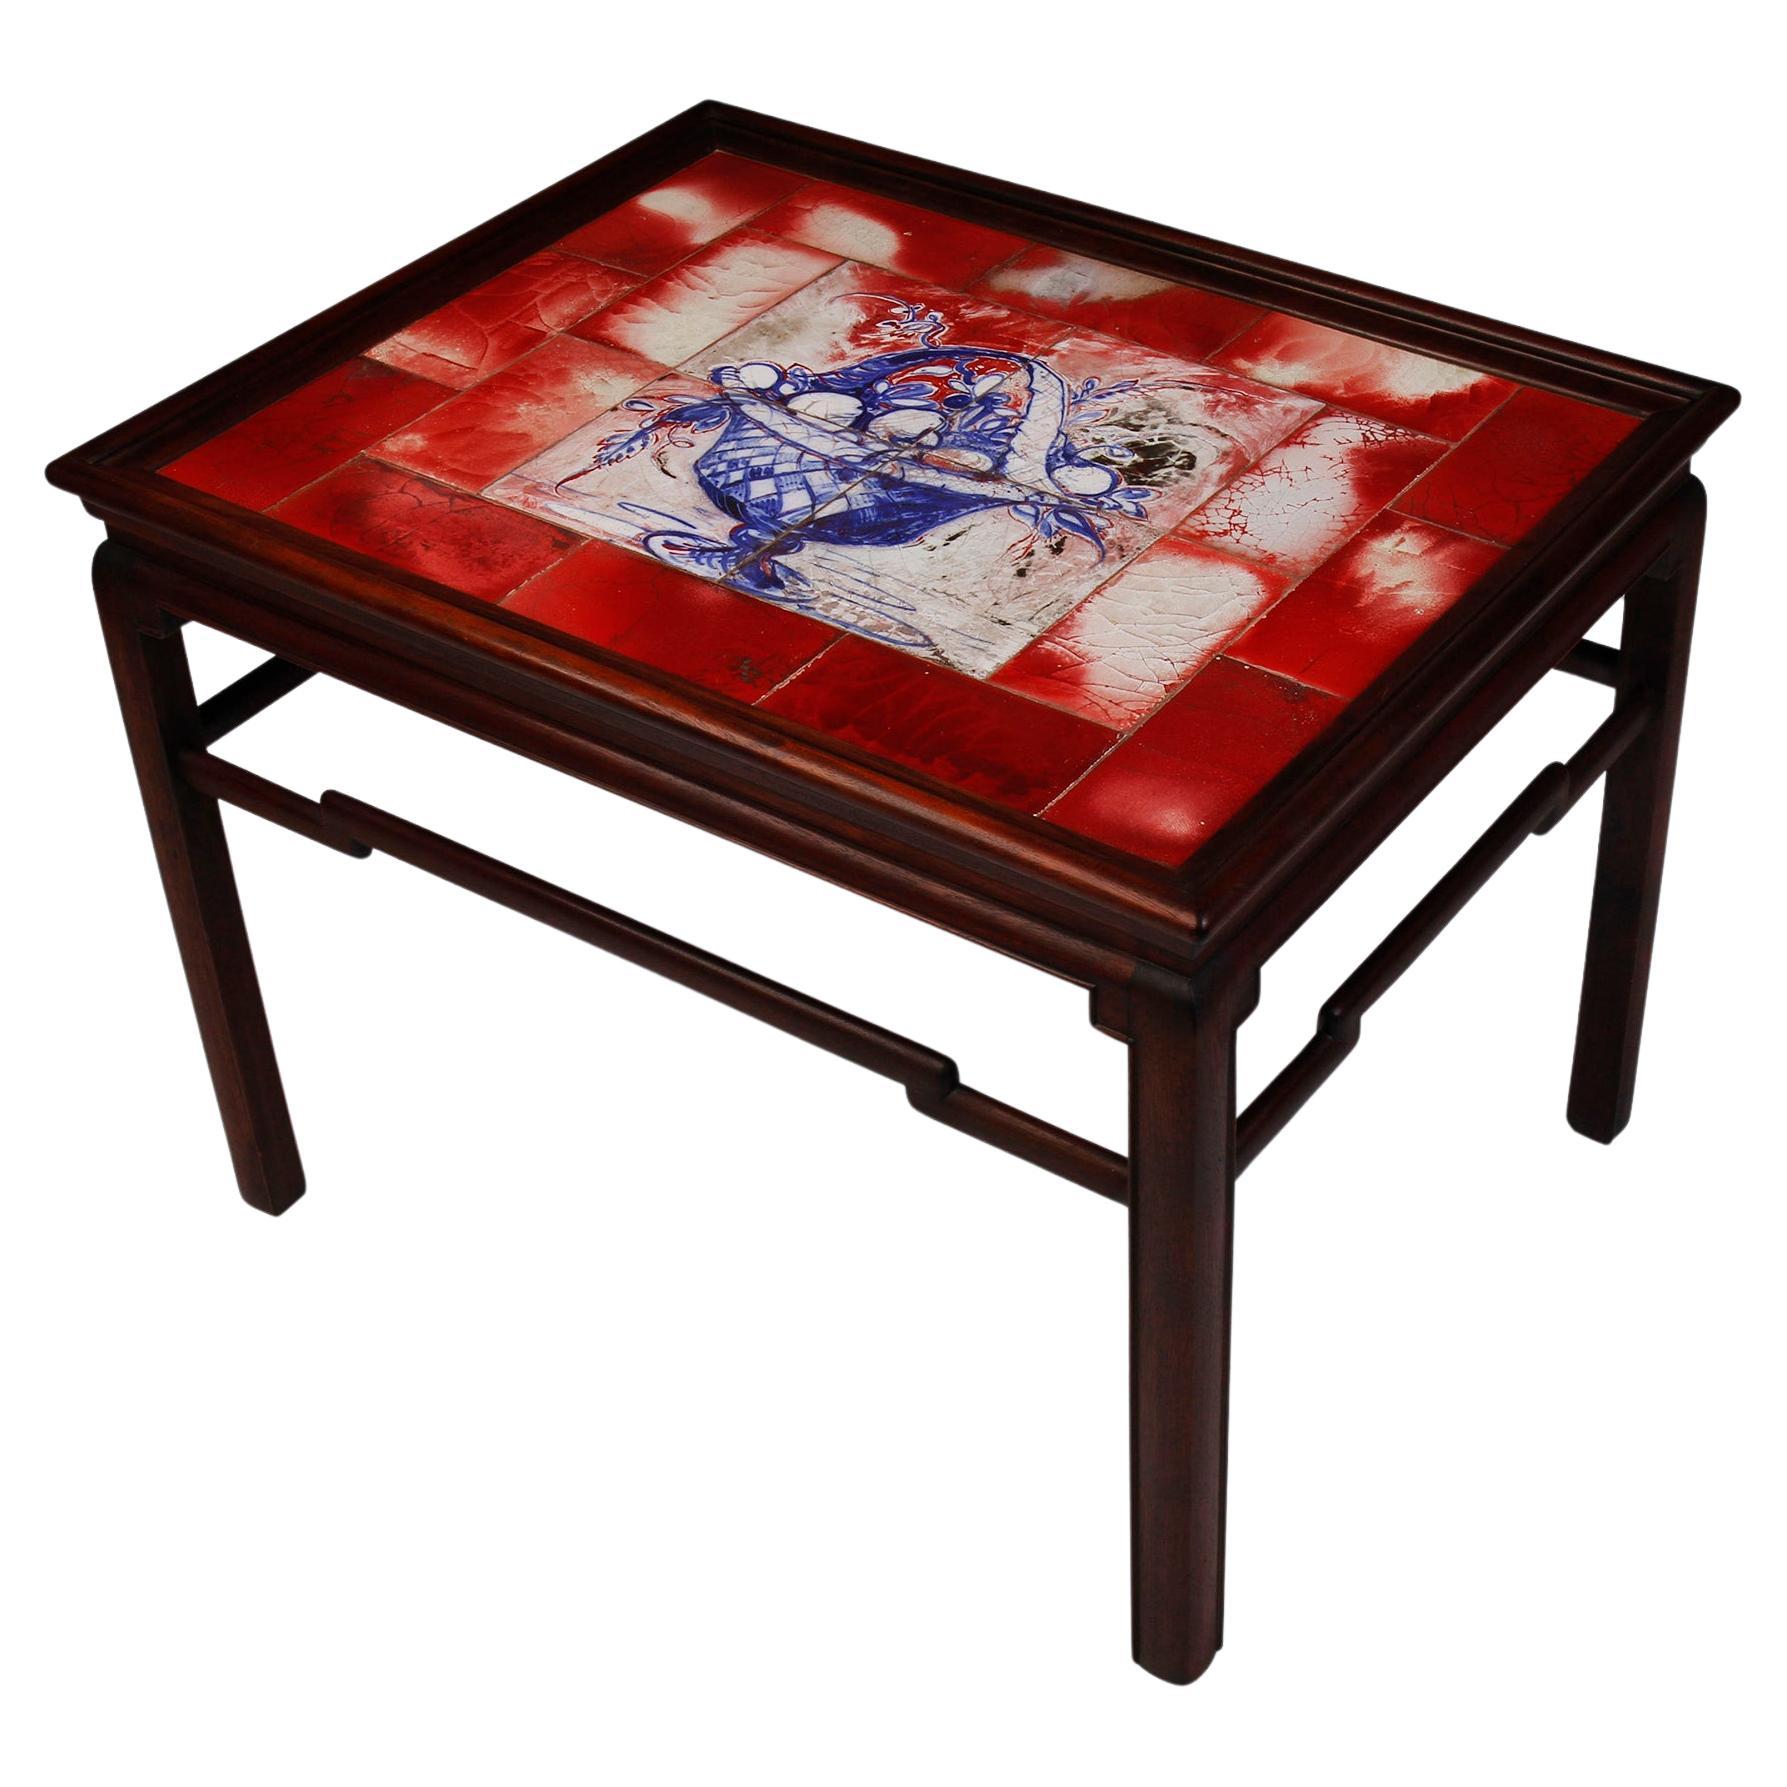 Table basse d'inspiration chinoise avec carreaux aux nuances rouges, blanches et bleues